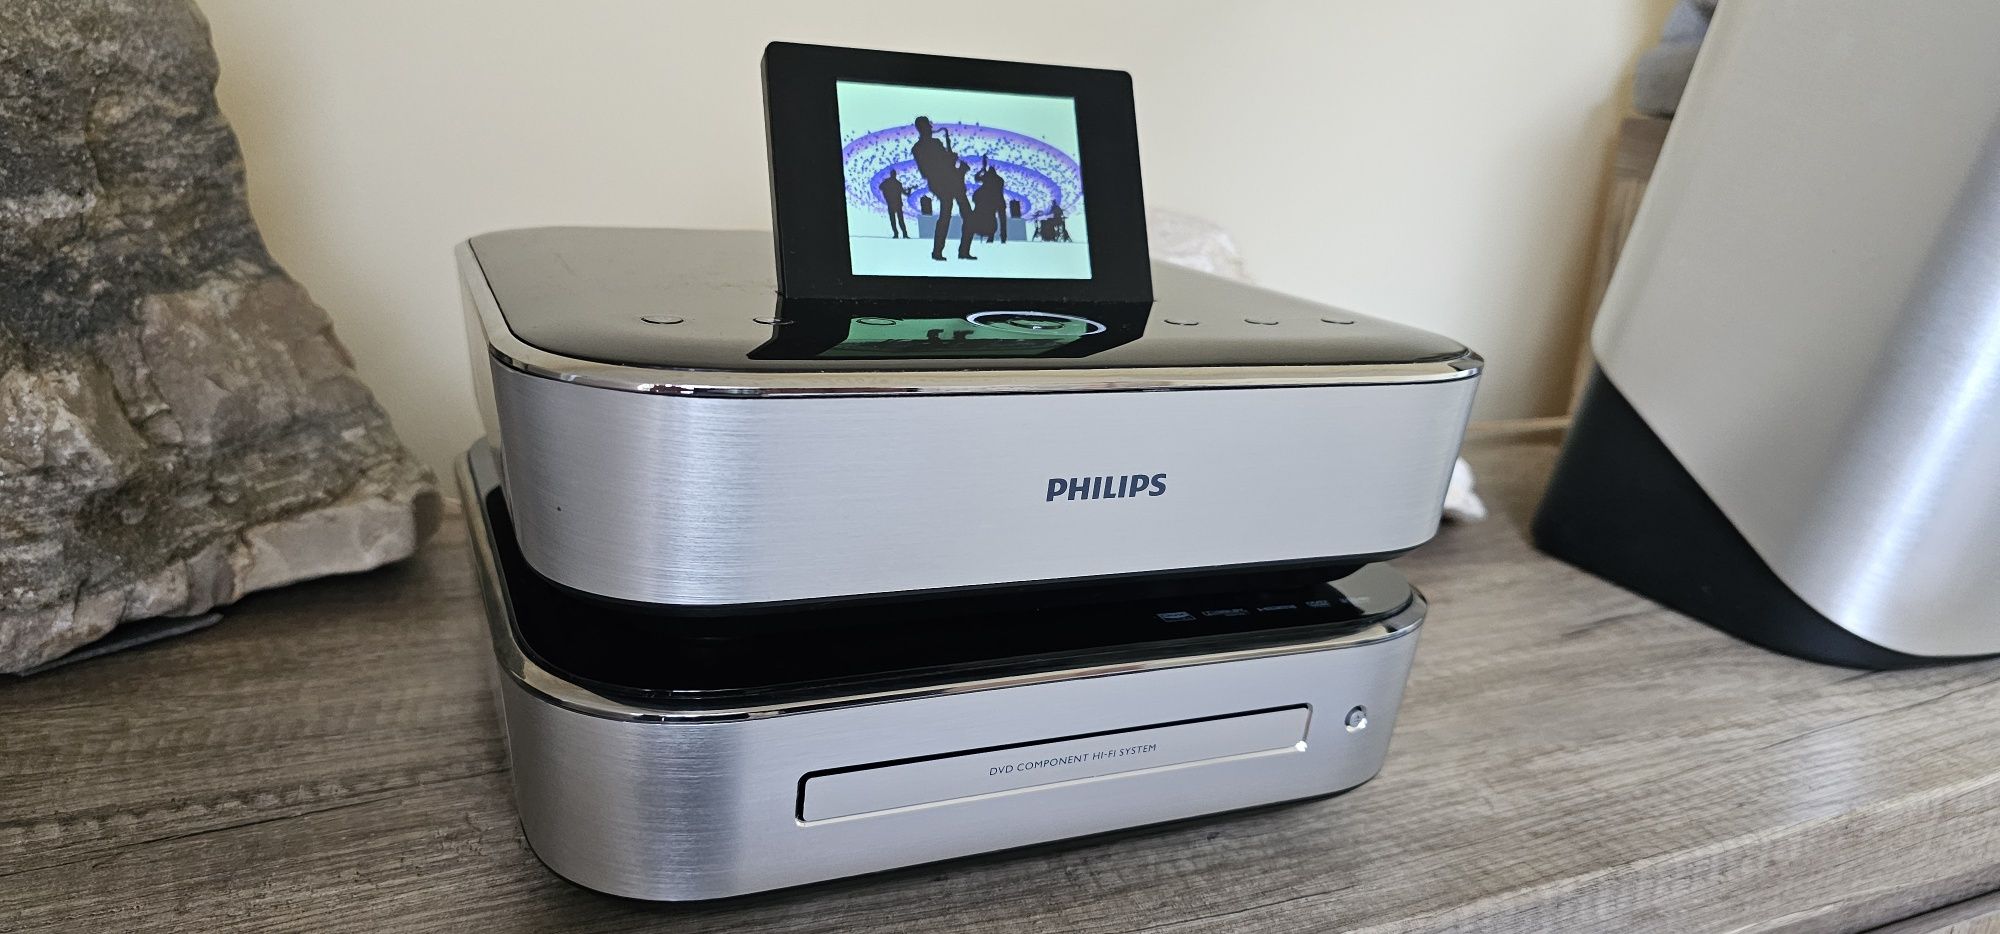 Wieża Philips hi-fi z odtwarzaniem DVD MCD900/12  stanBDB  100% sprawn